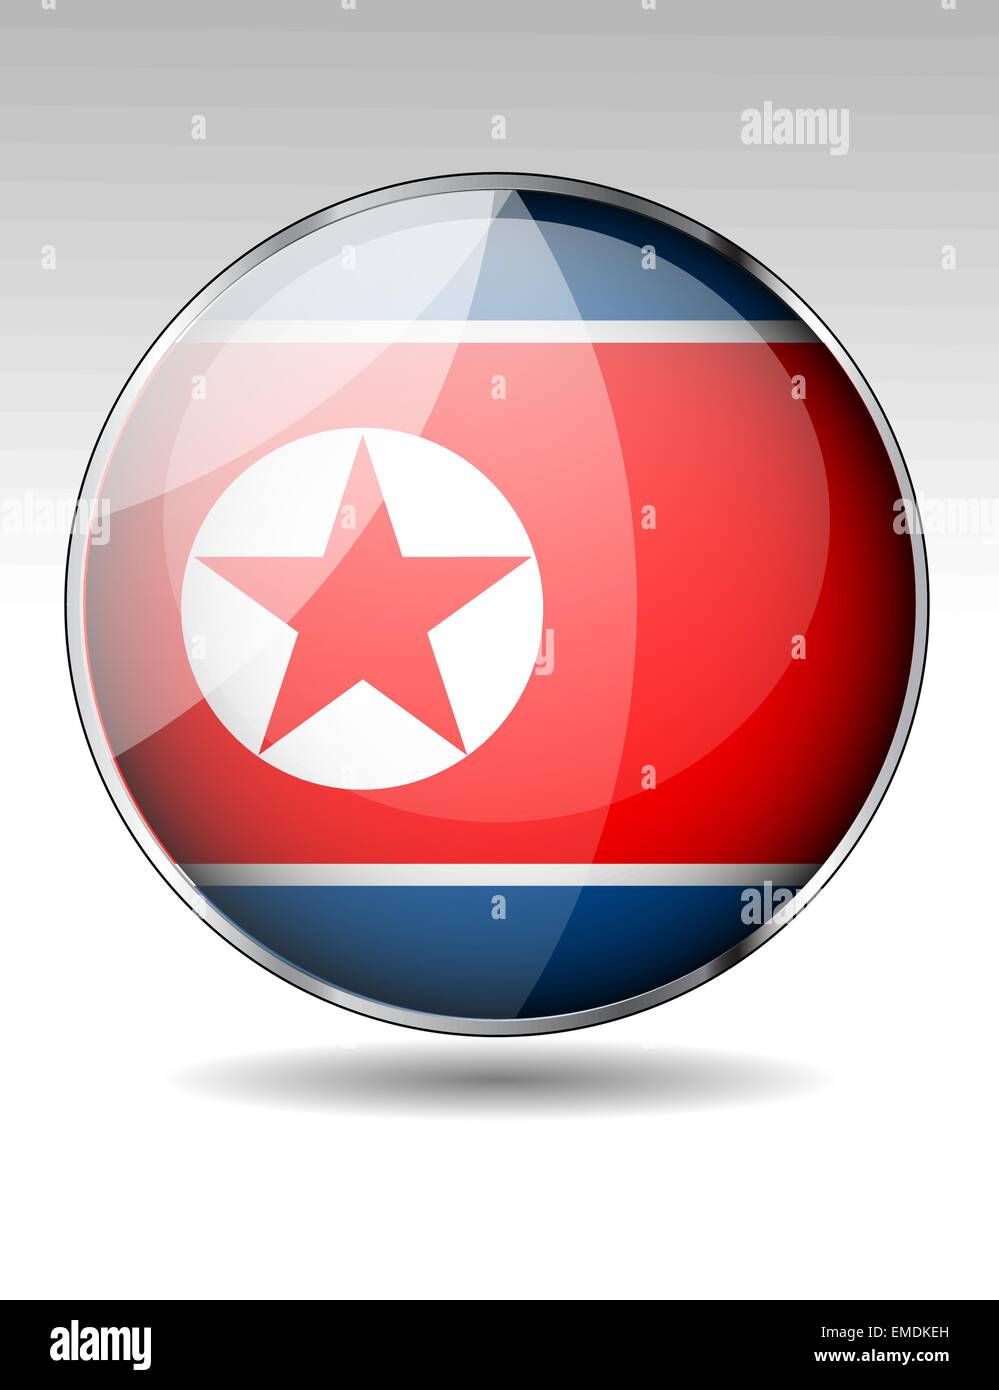 North Korea flag button Stock Vector